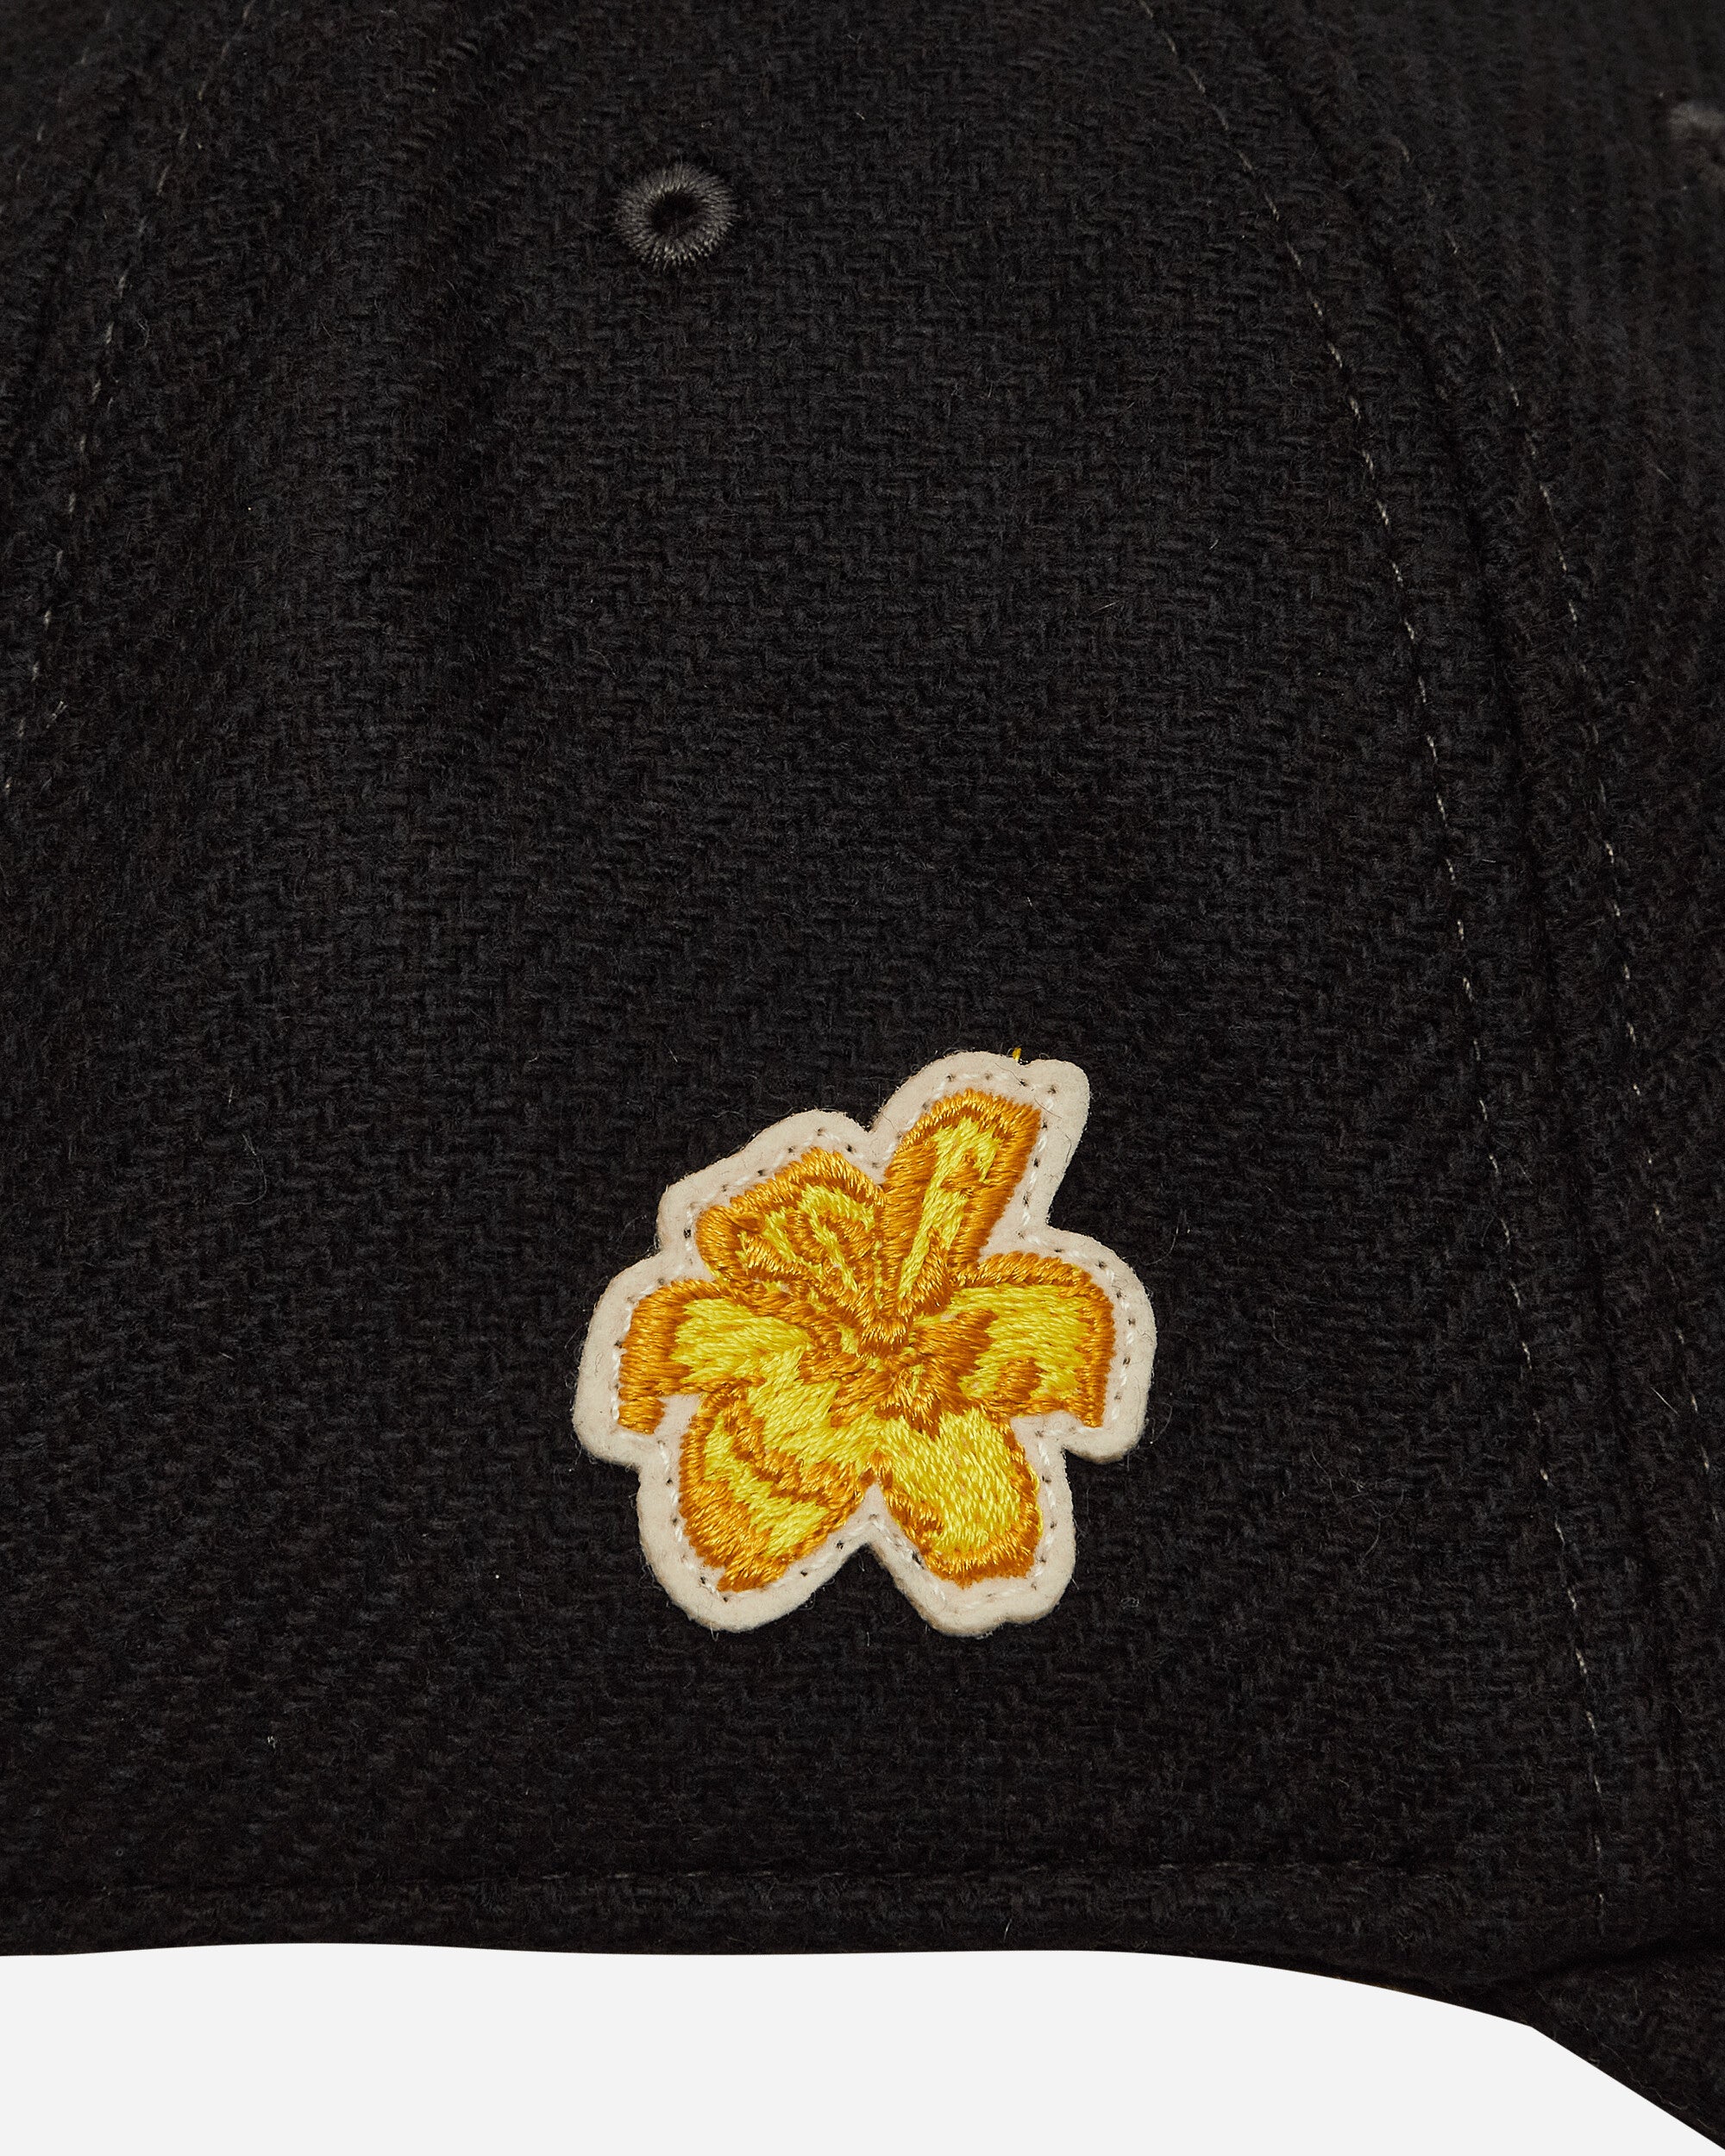 Moncler Genius Baseball Cap X Fragment Black Hats Caps 3B00005596UA 999